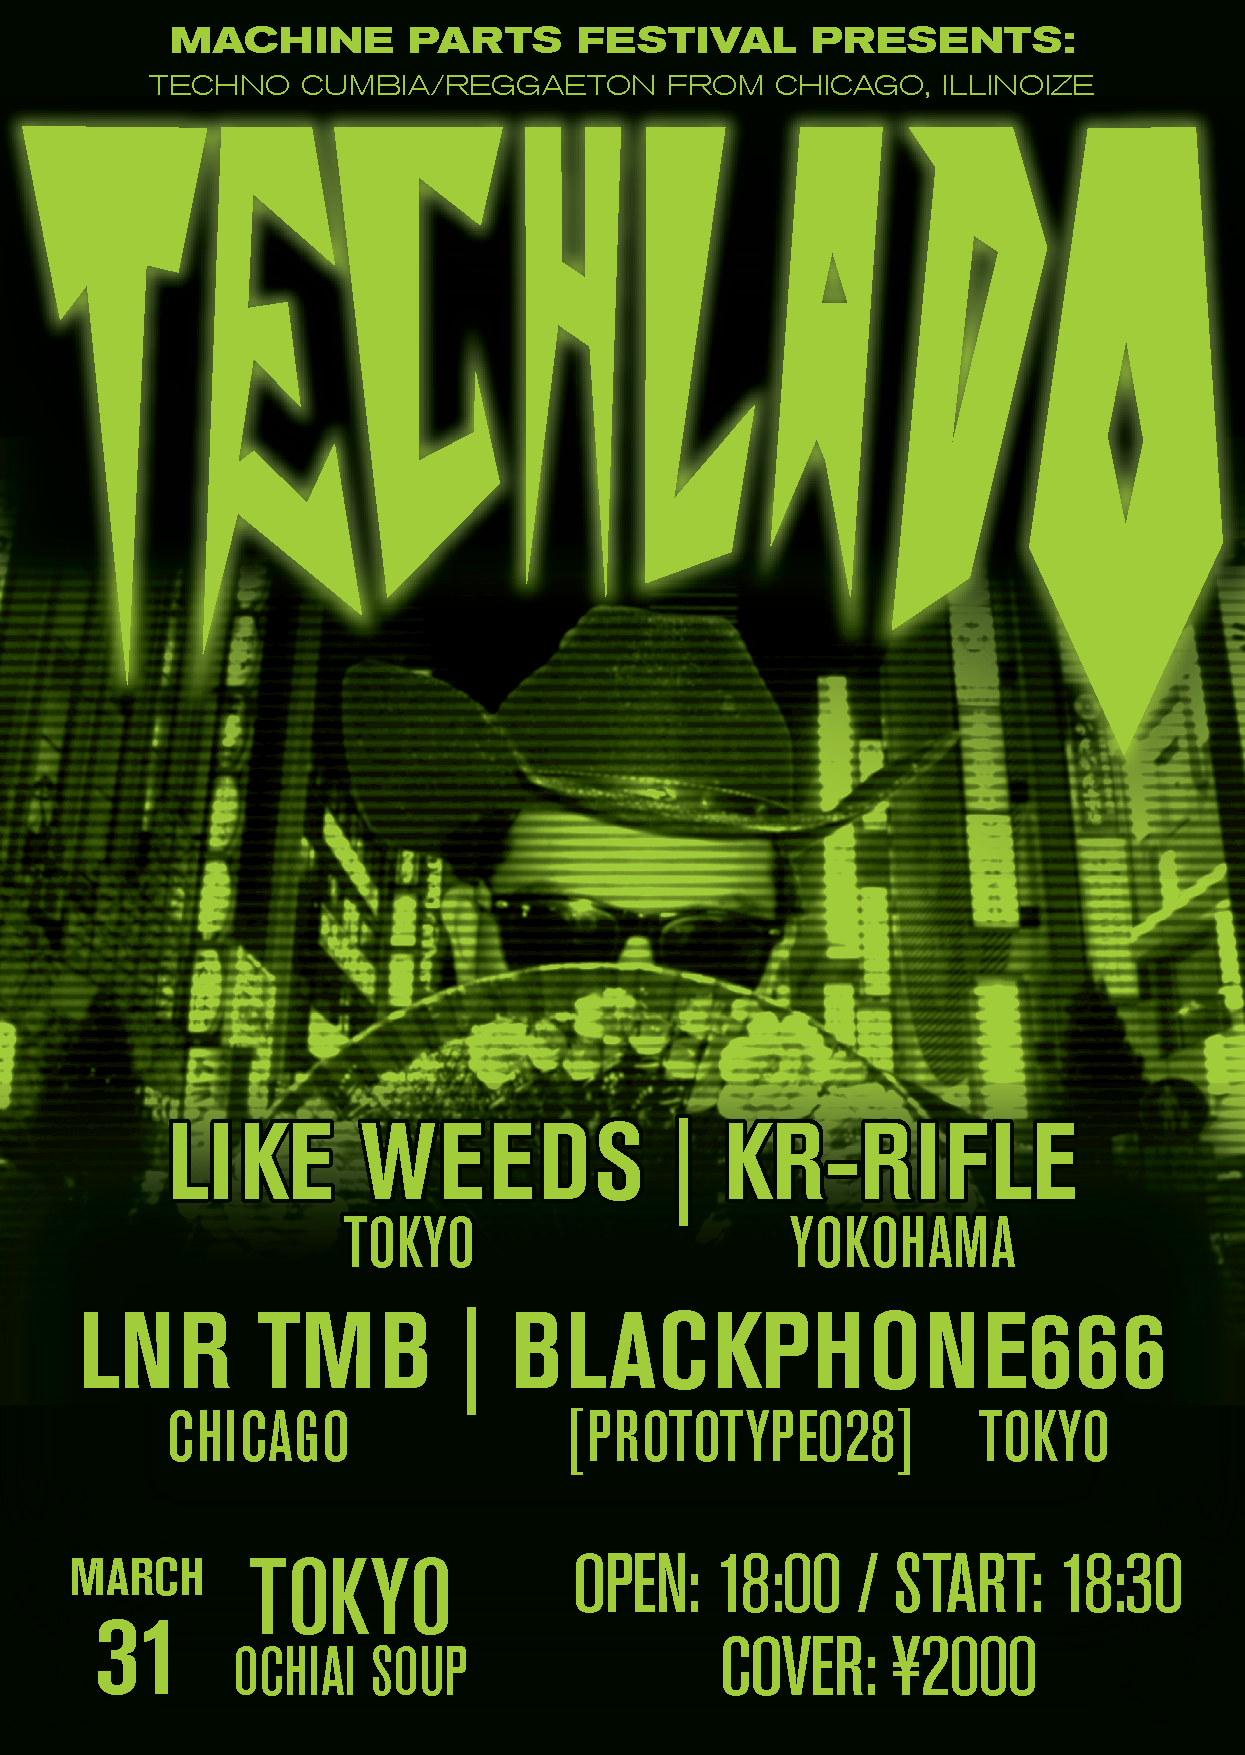 TECHLADO (CHICAGO) / LIKE WEEDS / KR-RIFLE / LNR TMB / BLACKPHONE666 - フライヤー裏